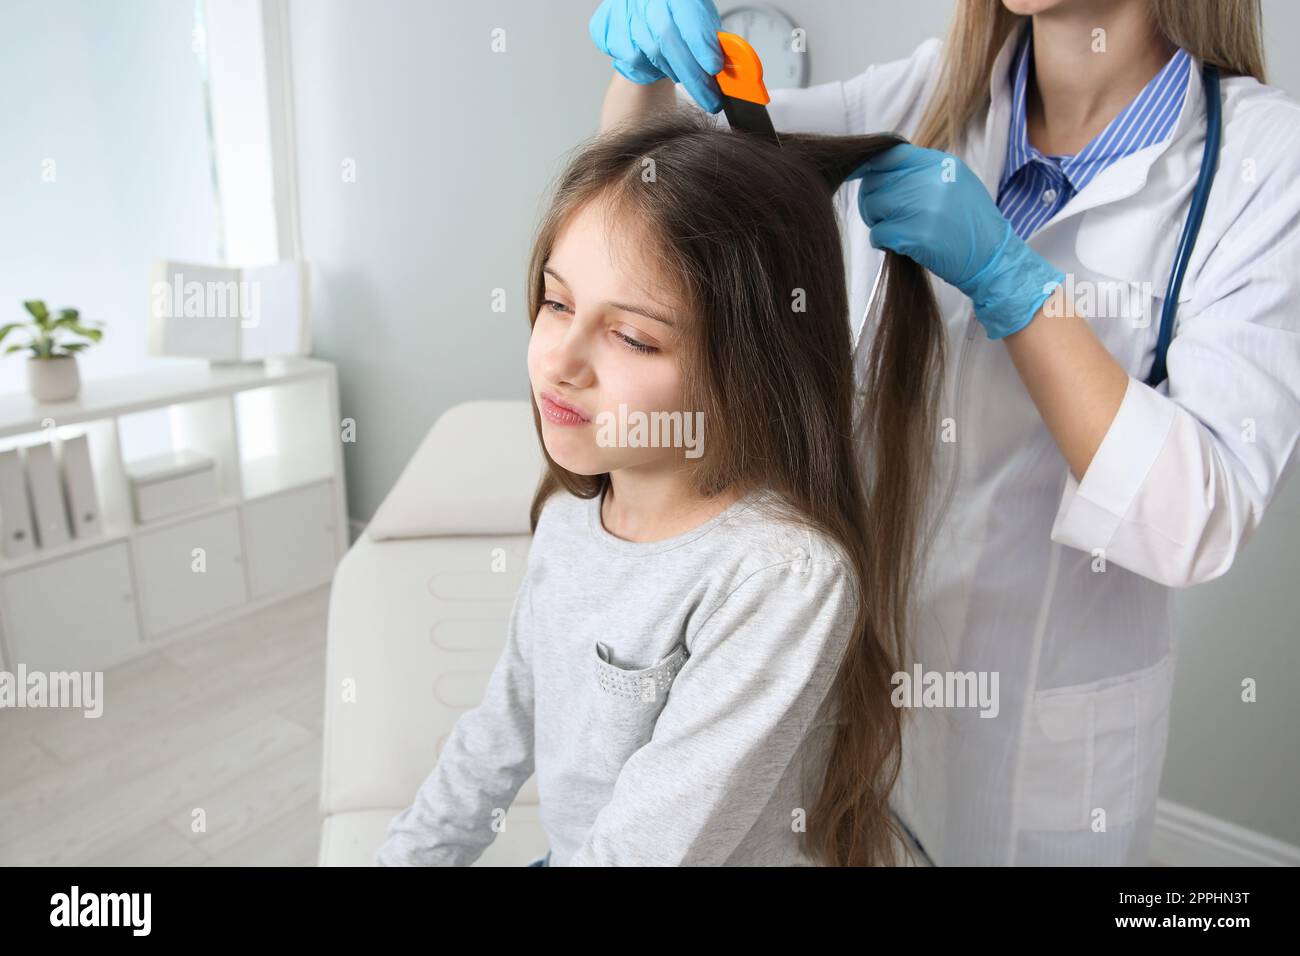 Medico che usa il pettine nit sui capelli della ragazza in clinica. Trattamento antighiaccio Foto Stock